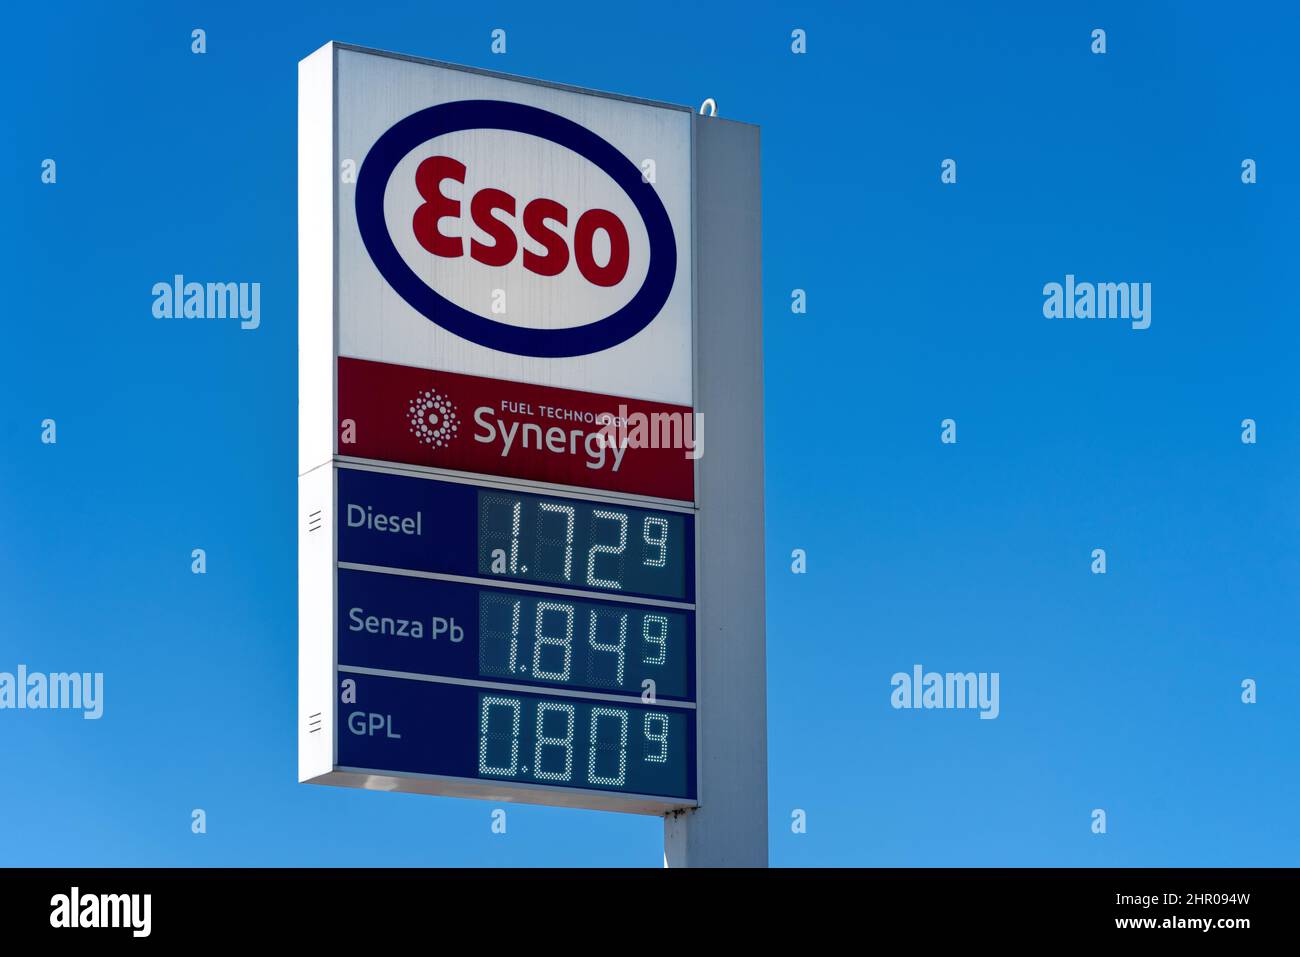 Fossano, Italie - 22 février 2022 : logo Esso avec affichage du prix du carburant en euros sur ciel bleu, Esso est une marque du géant mondial de l'industrie pétrolière Exxon Mob Banque D'Images